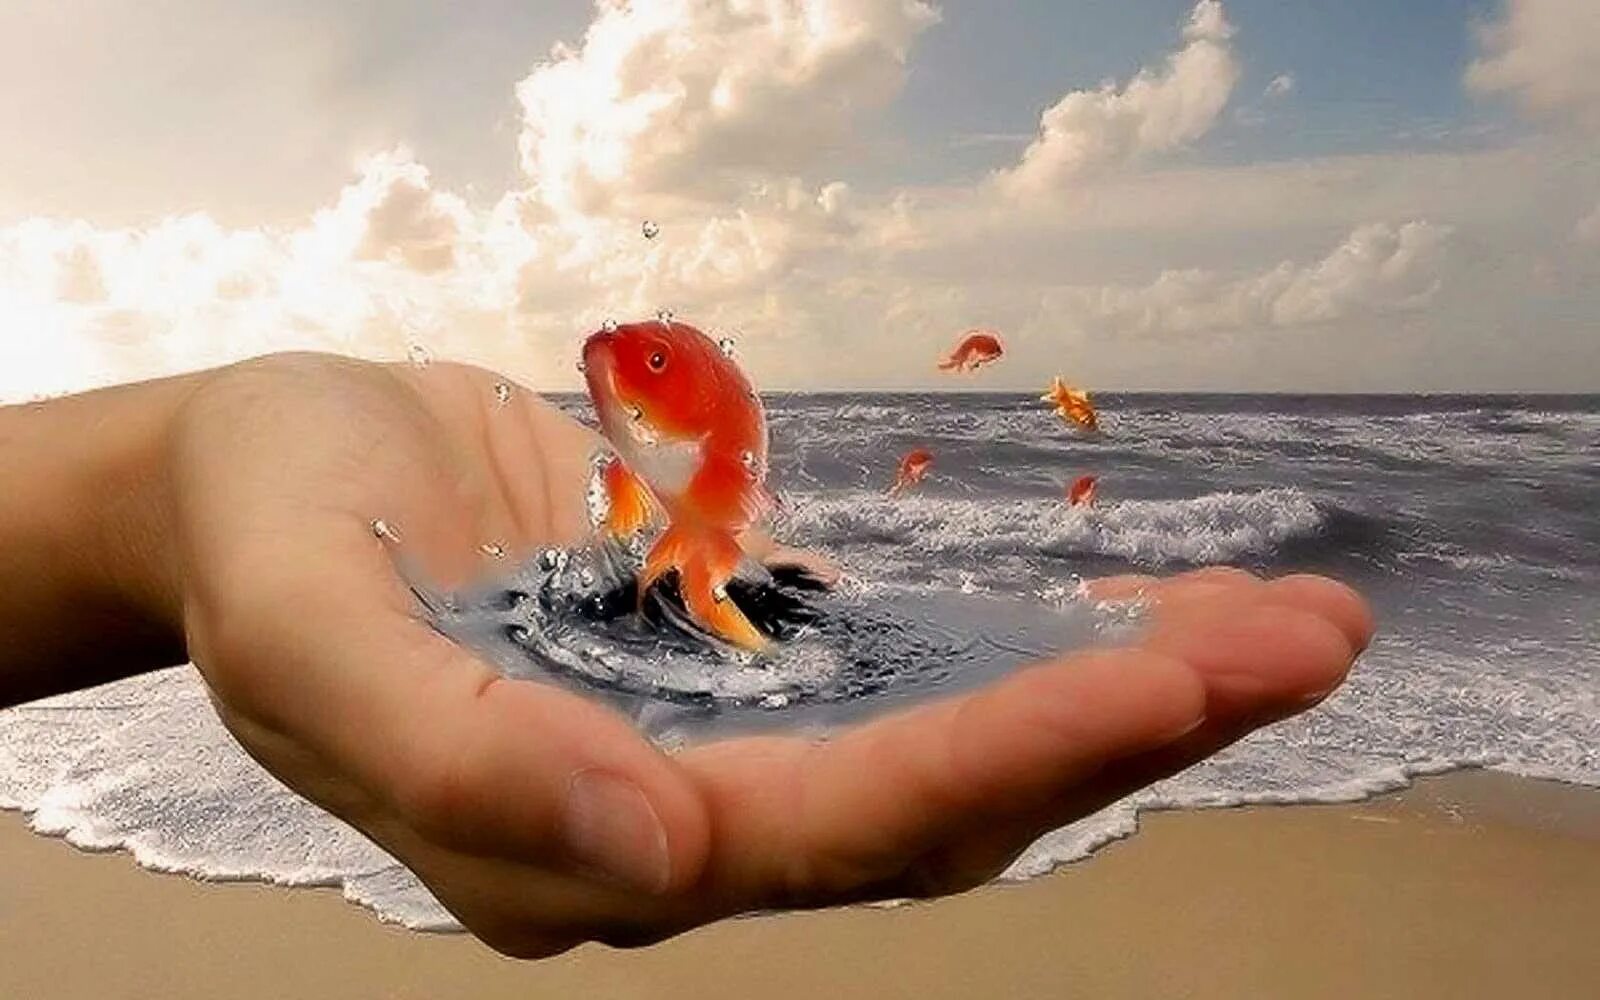 Золотая рыбка в руках. Золотая рыбка исполняет желания. Исполнения всех желаний. Добро у моря. Отвага души